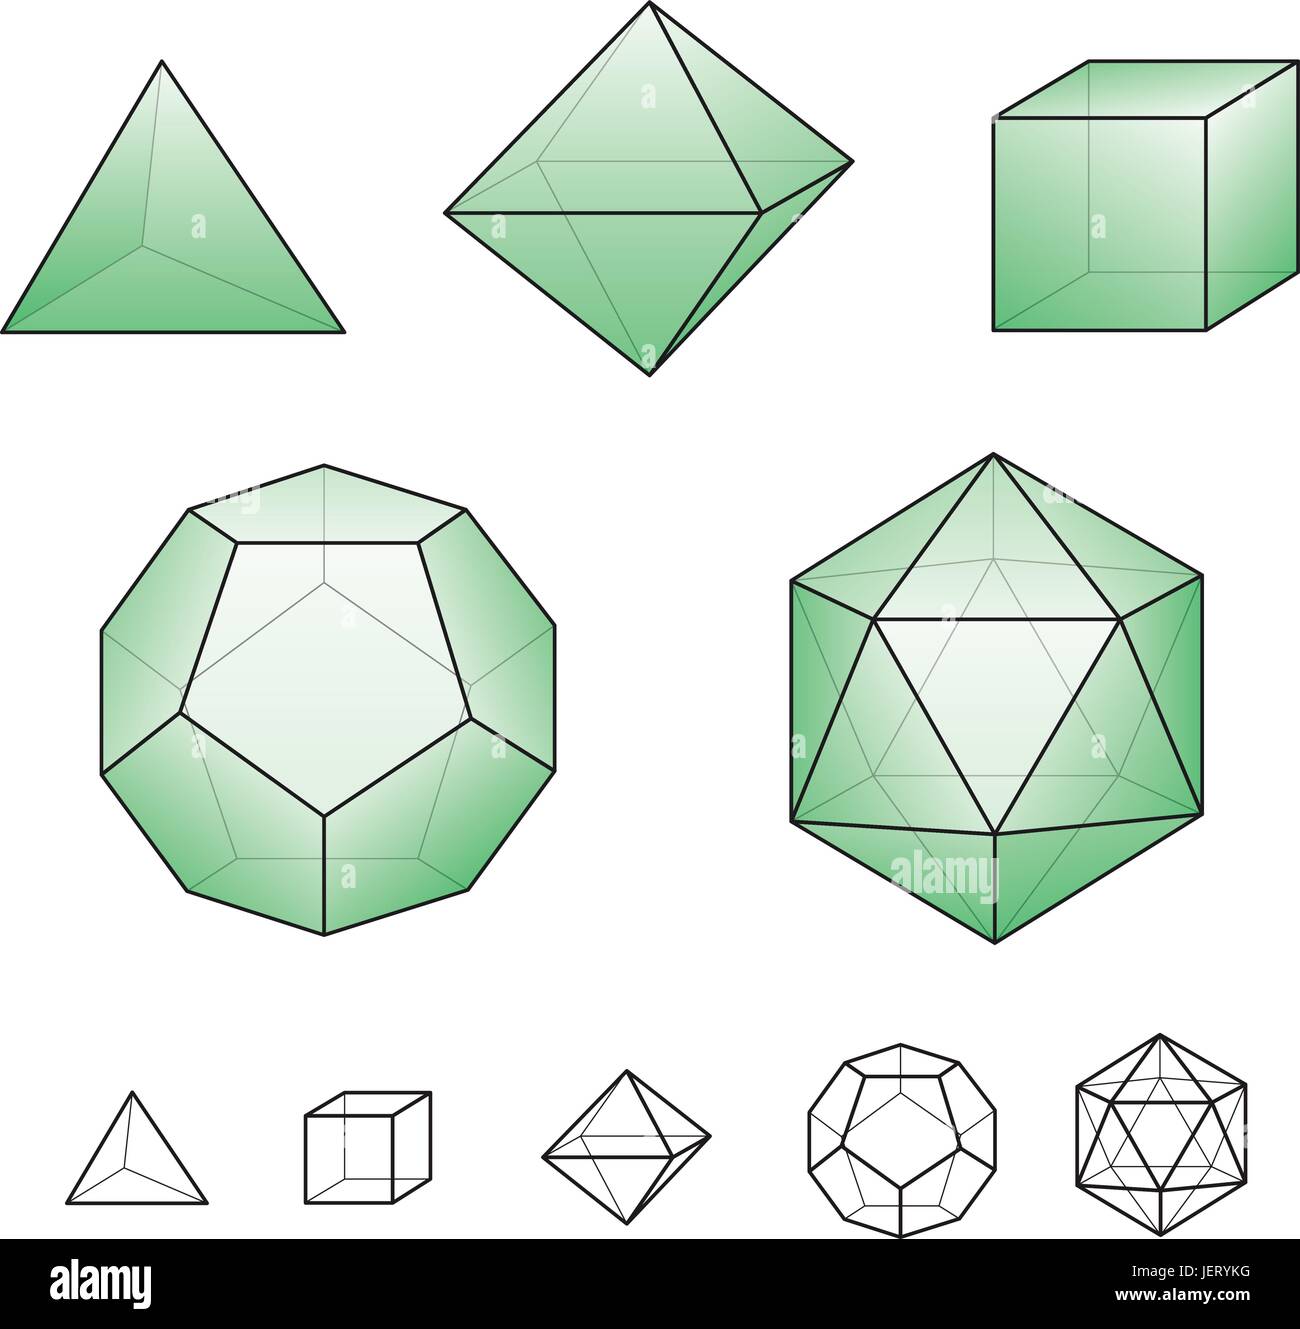 La géométrie, cube, tétraèdre, octaèdre, icosaèdre, symétrie, l'hexaèdre, Illustration de Vecteur